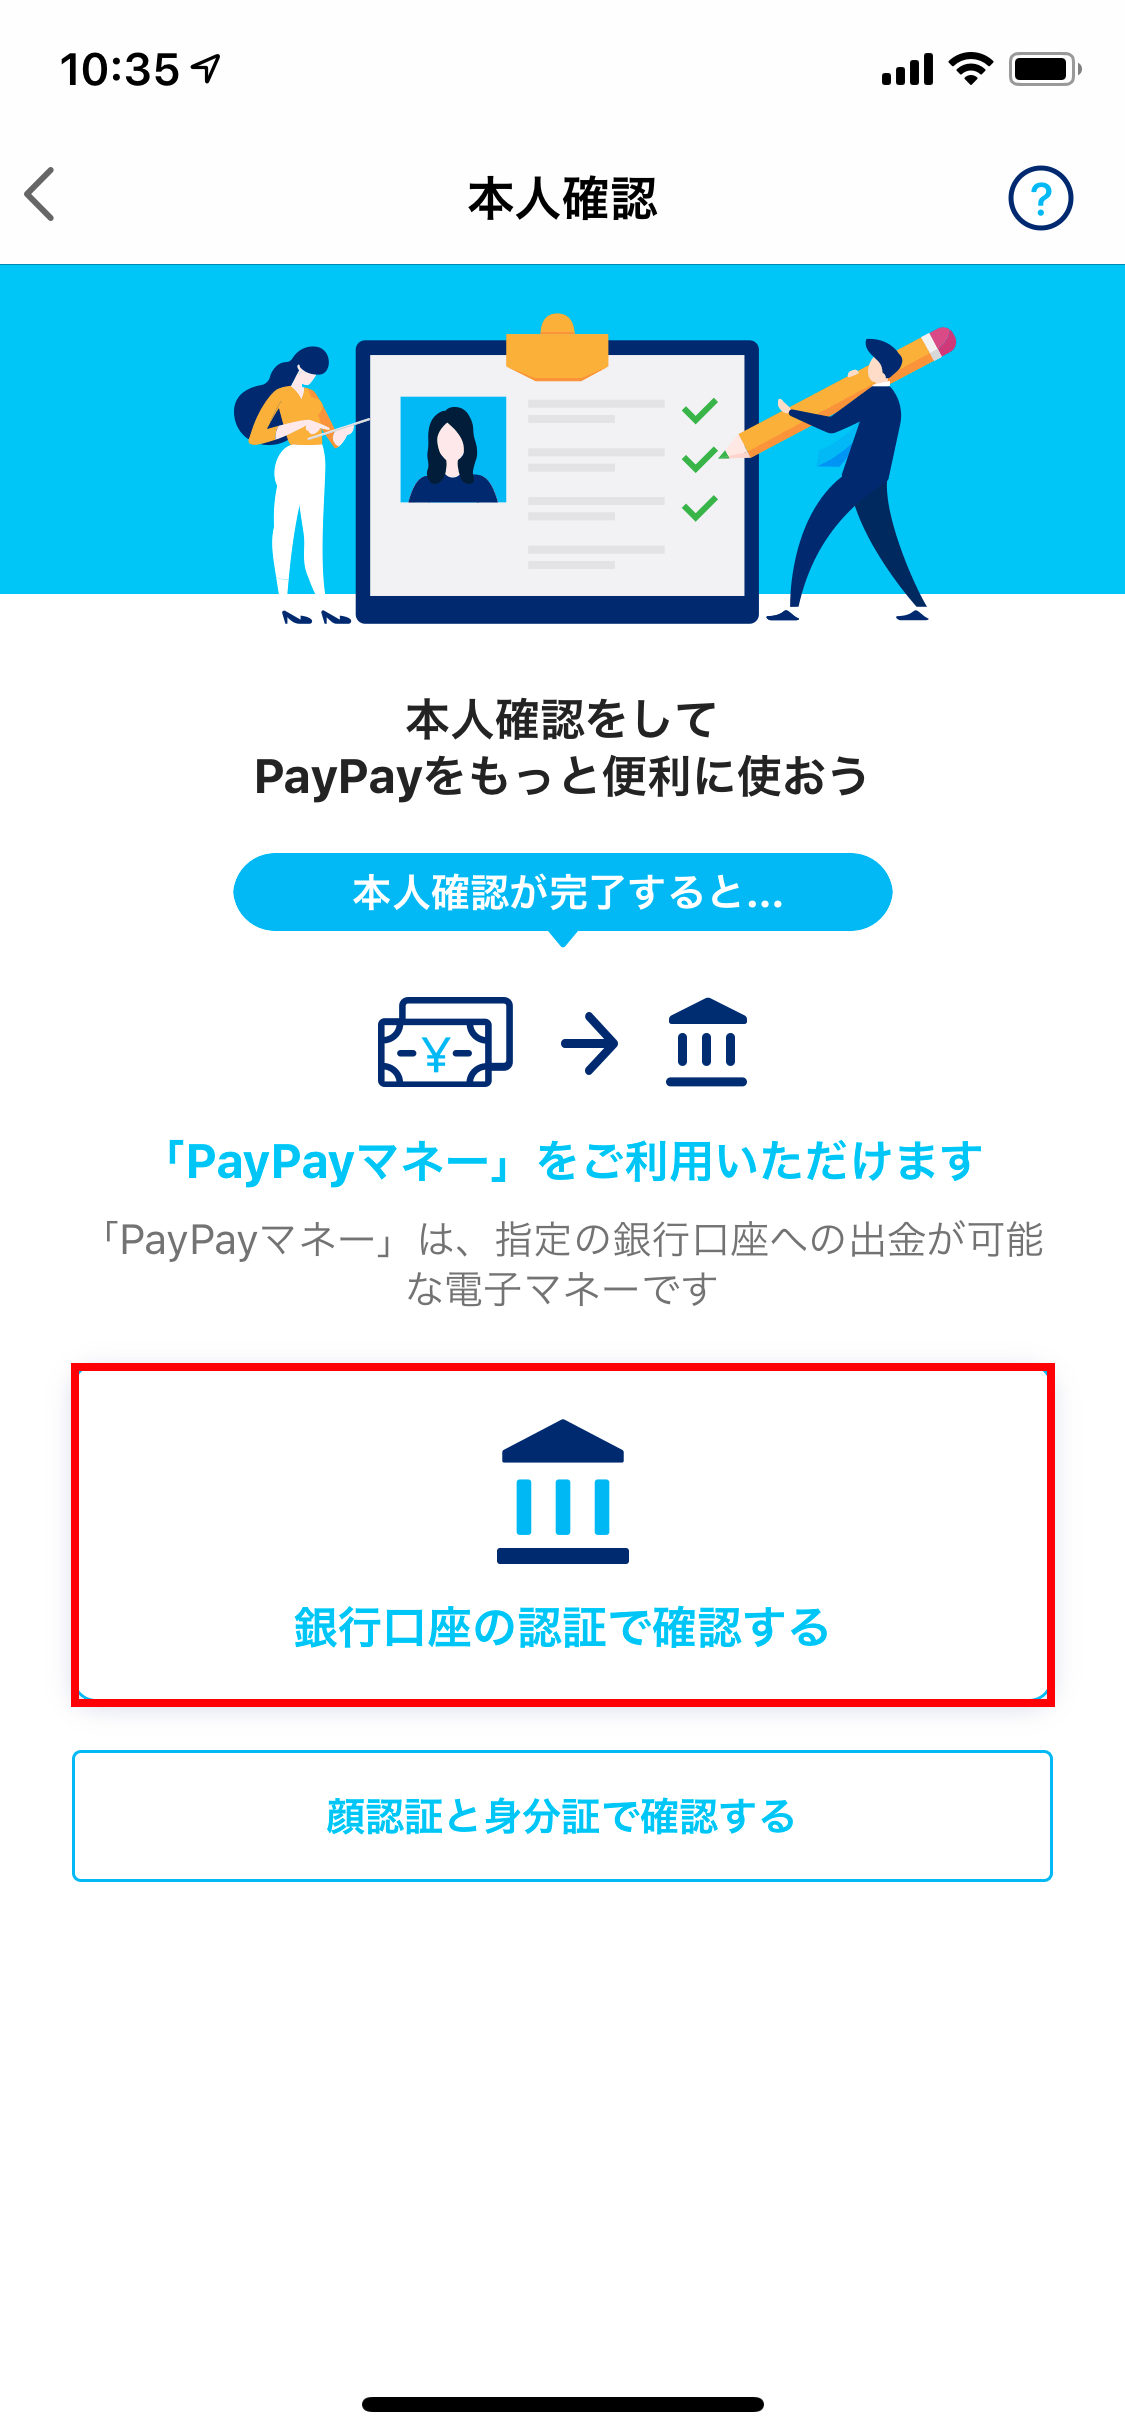 PayPay 出金